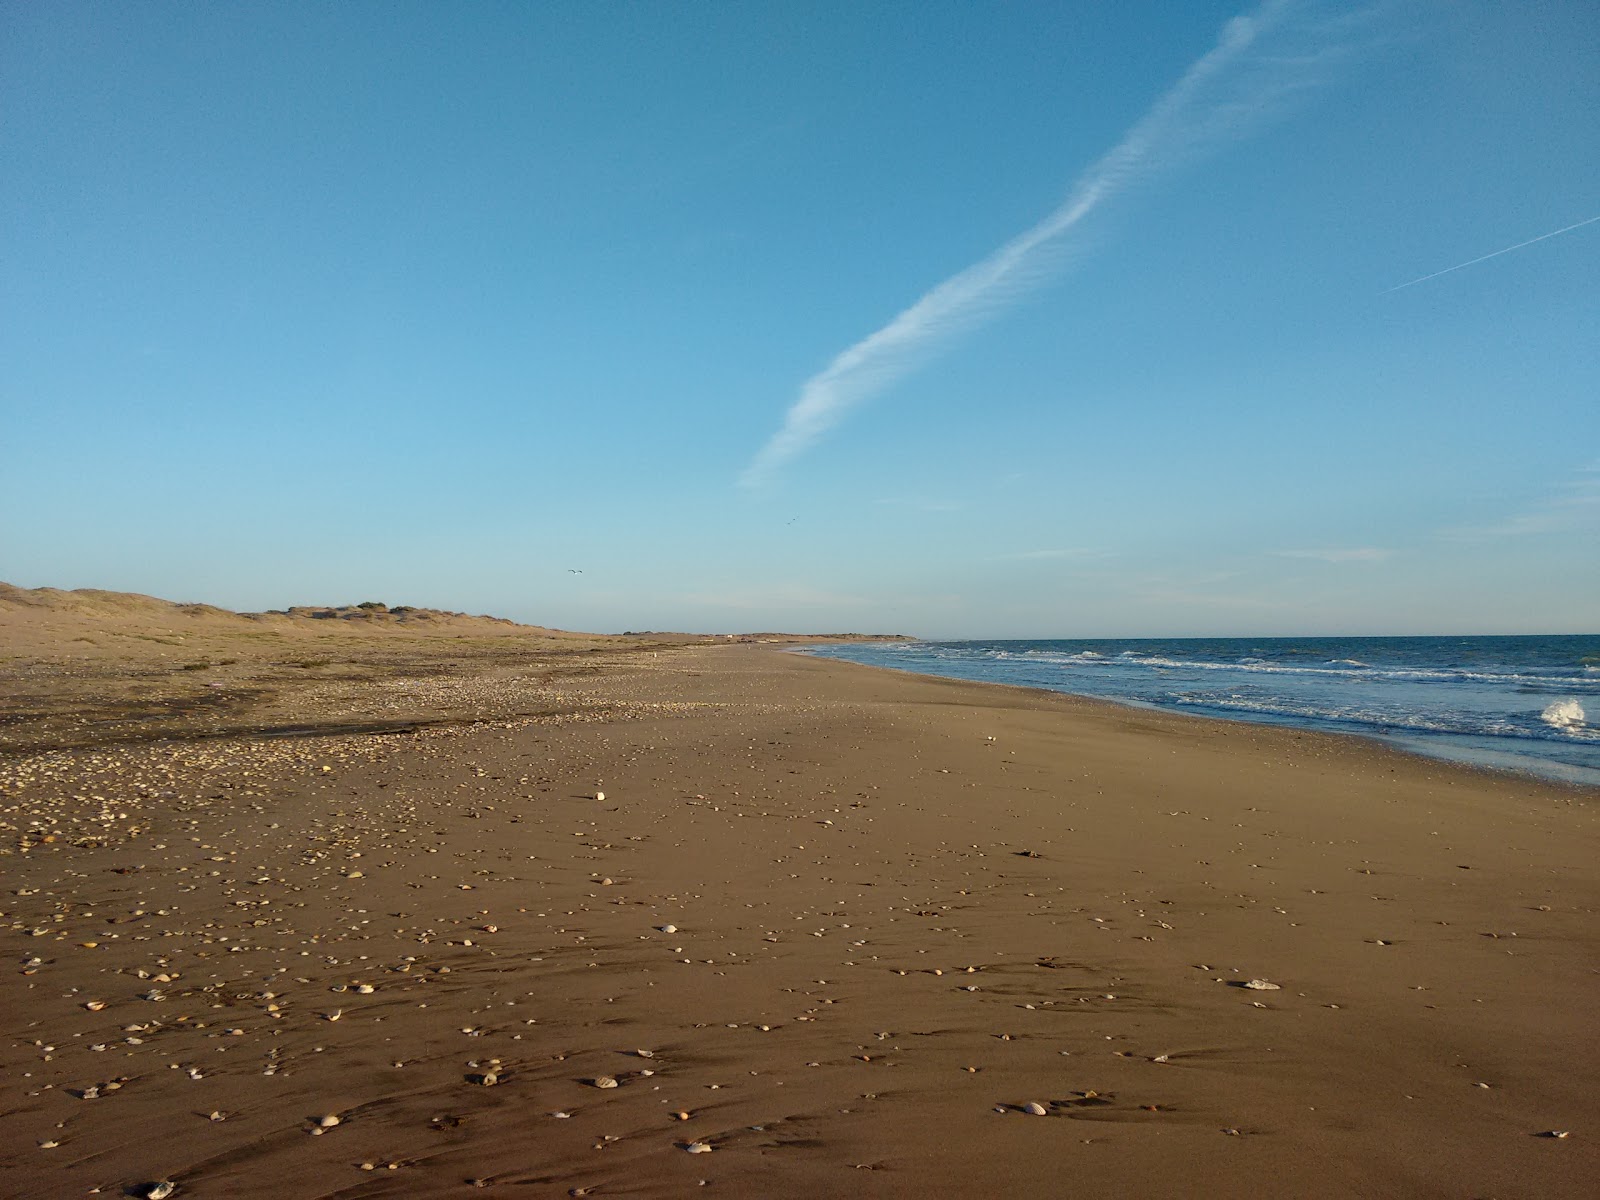 Fotografie cu El Siaric beach cu o suprafață de nisip gri